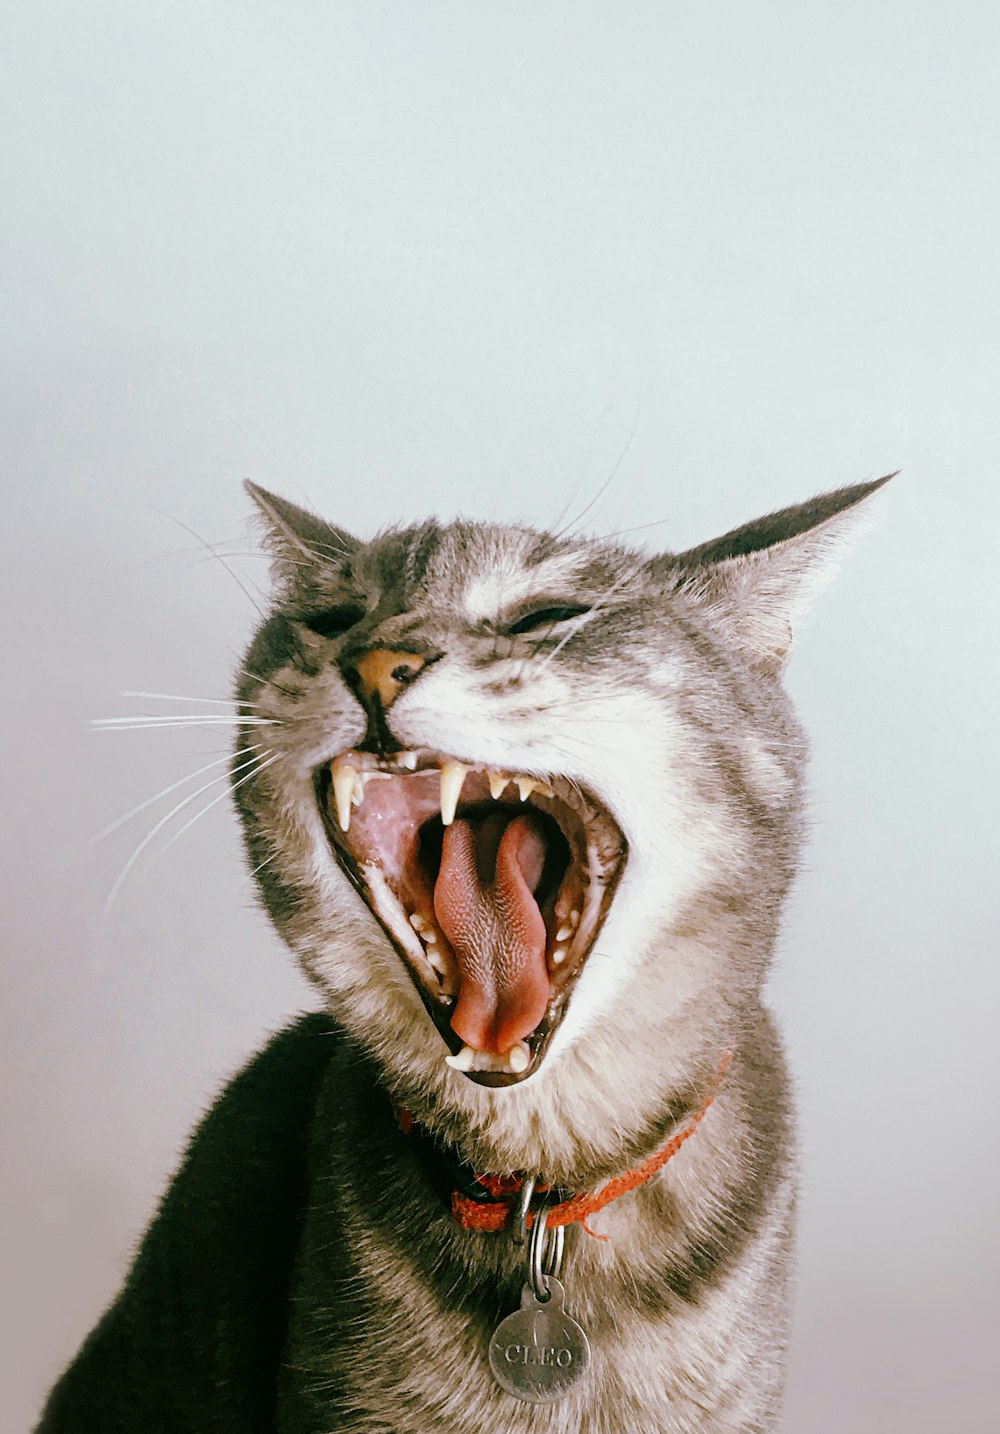 gato gris y blanco con la boca abierta